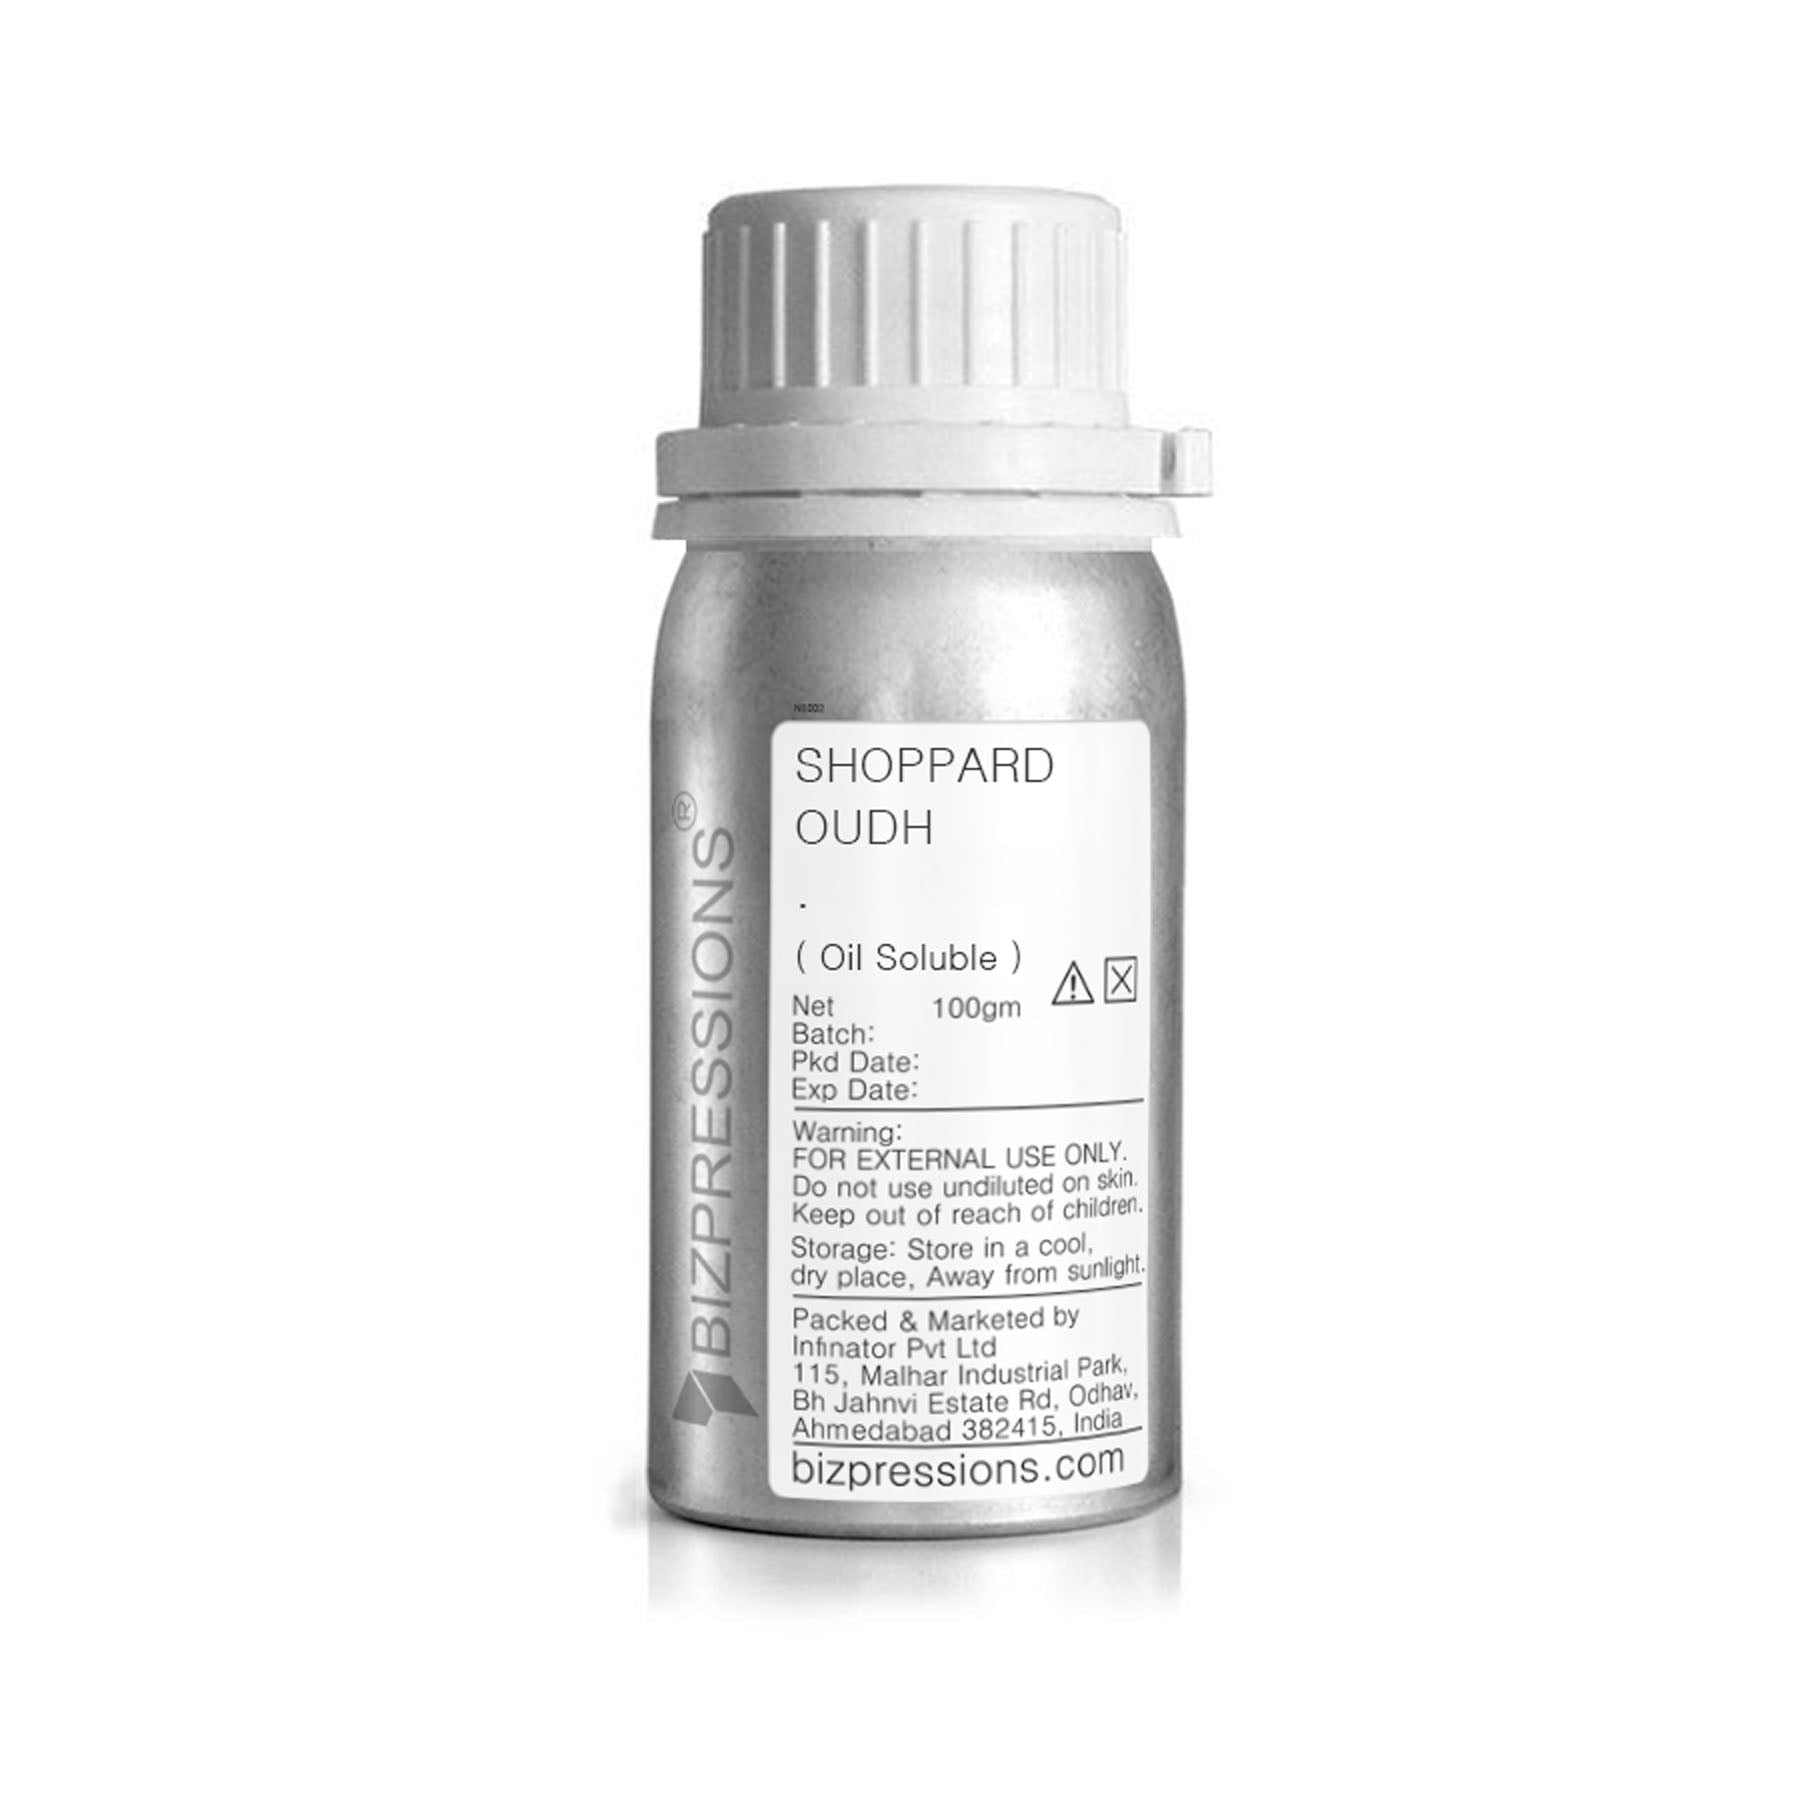 SHOPPARD OUDH - Fragrance ( Oil Soluble ) - 100 gm